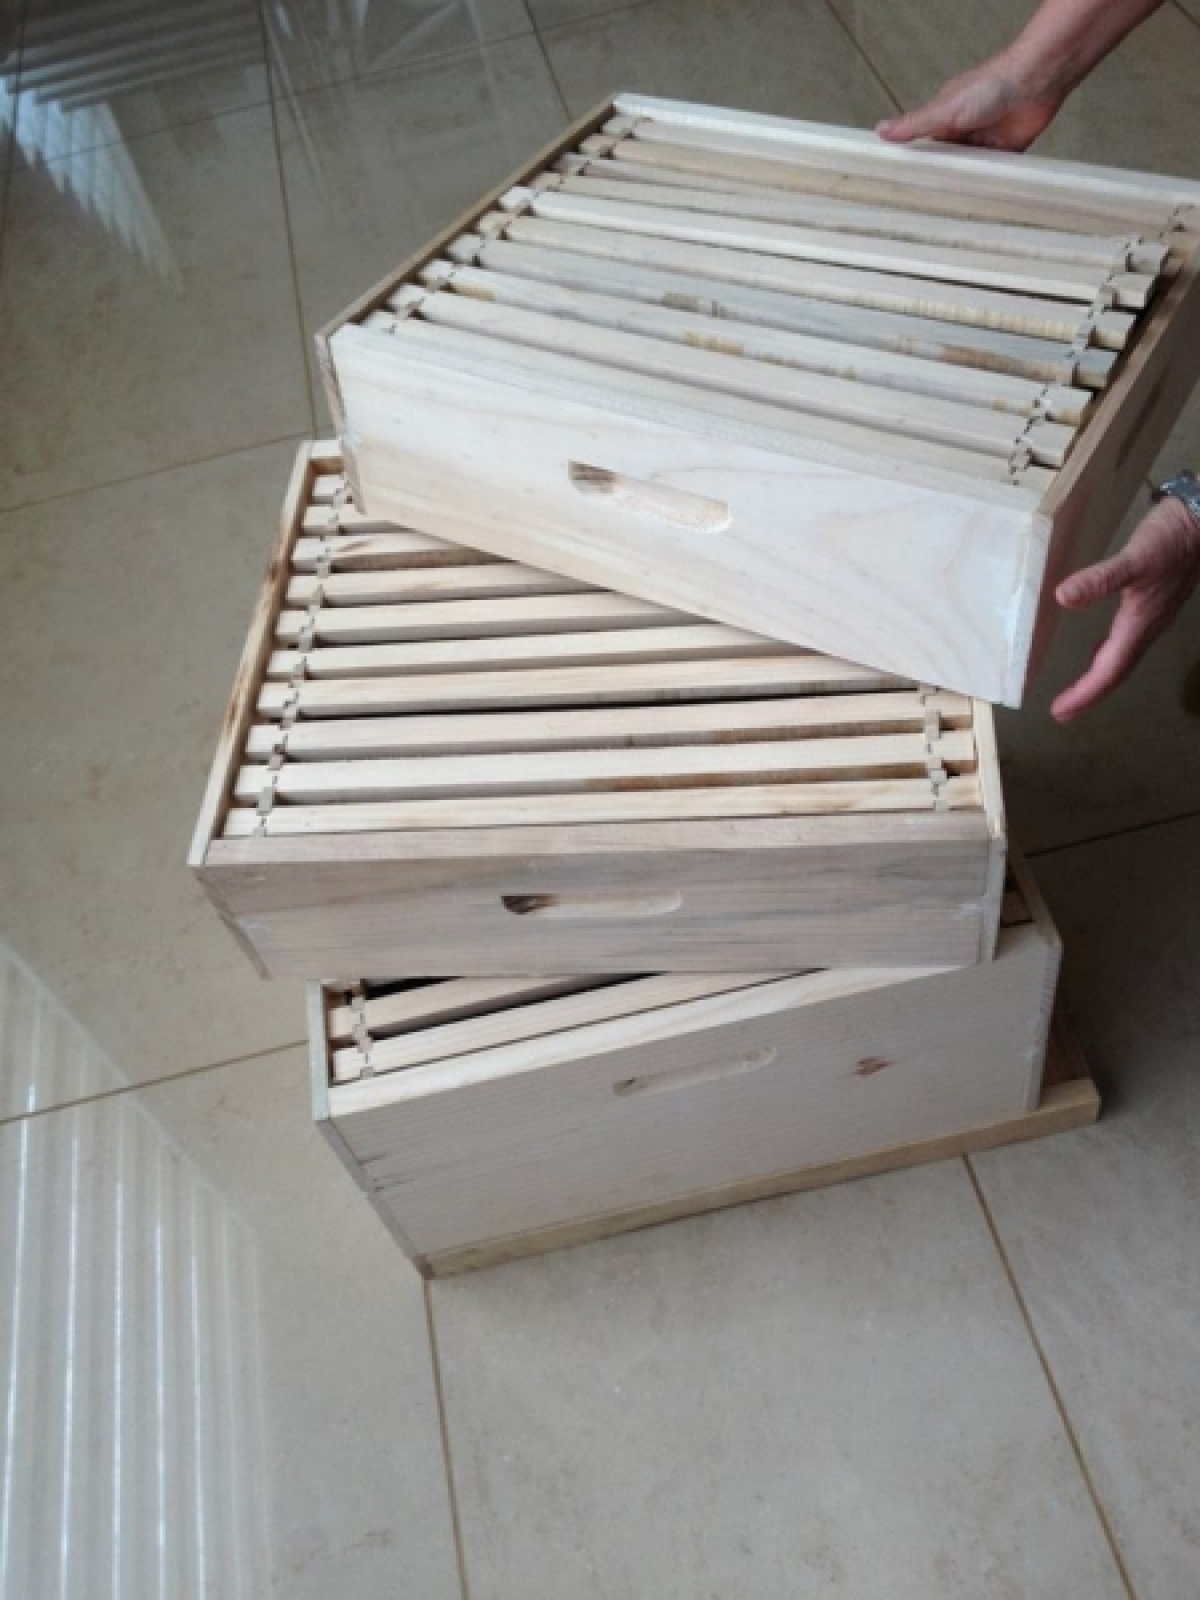 Vendo fabrica de caixas para apicultura